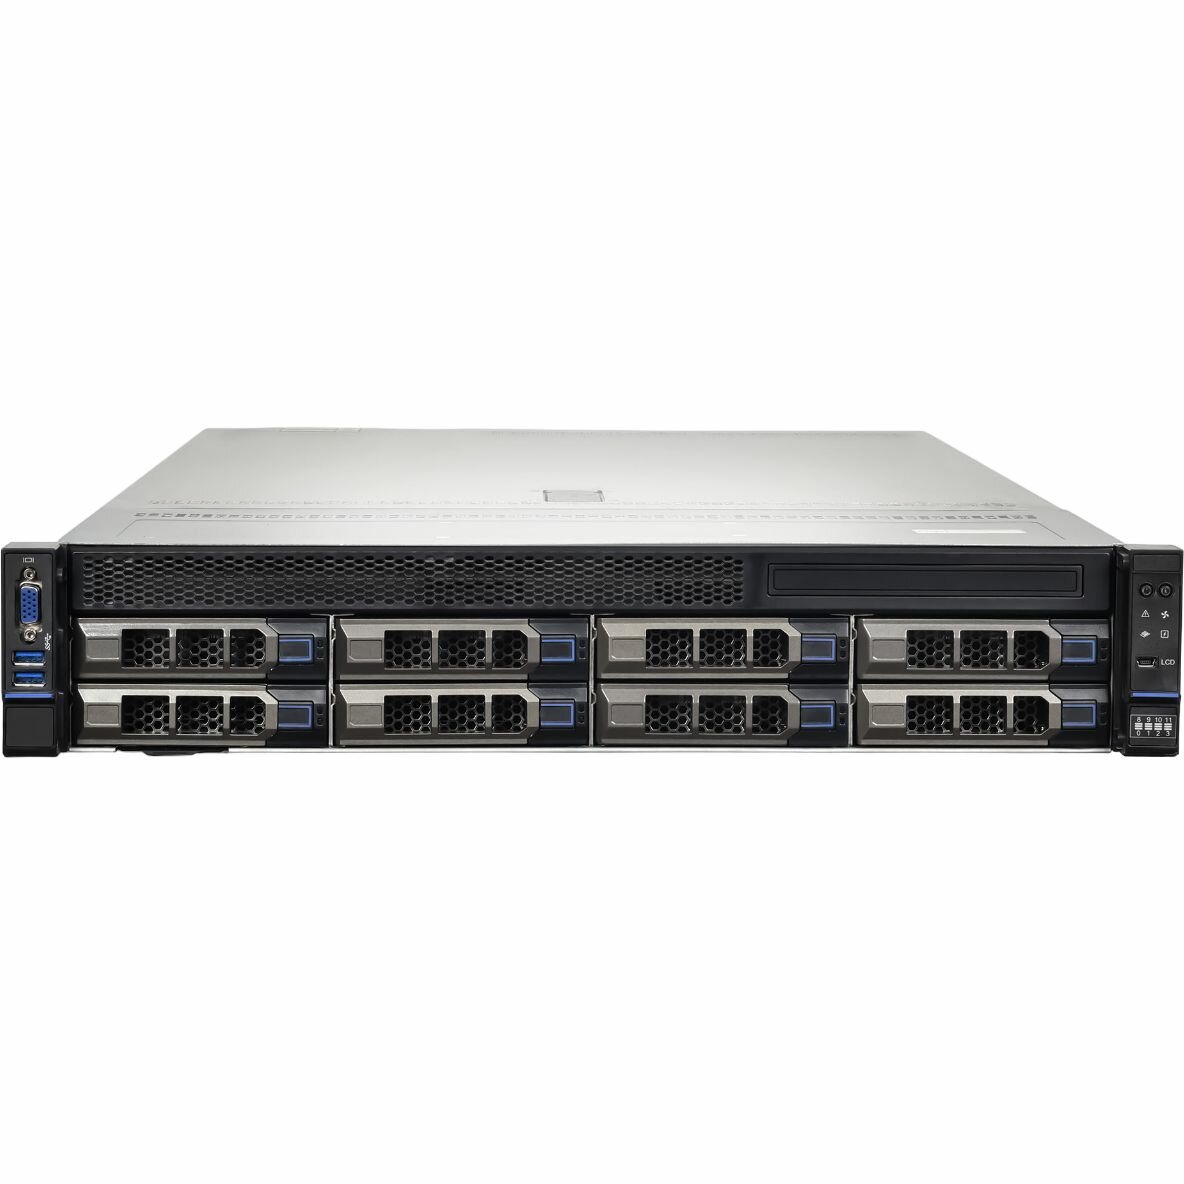 Серверная платформа HIPER Server R3 - Advanced (R3-T223208-13) - 2U/C621A/2x LGA4189 (Socket-P4)/Xeon SP поколения 3/270Вт TDP/32x DIMM/8x 3